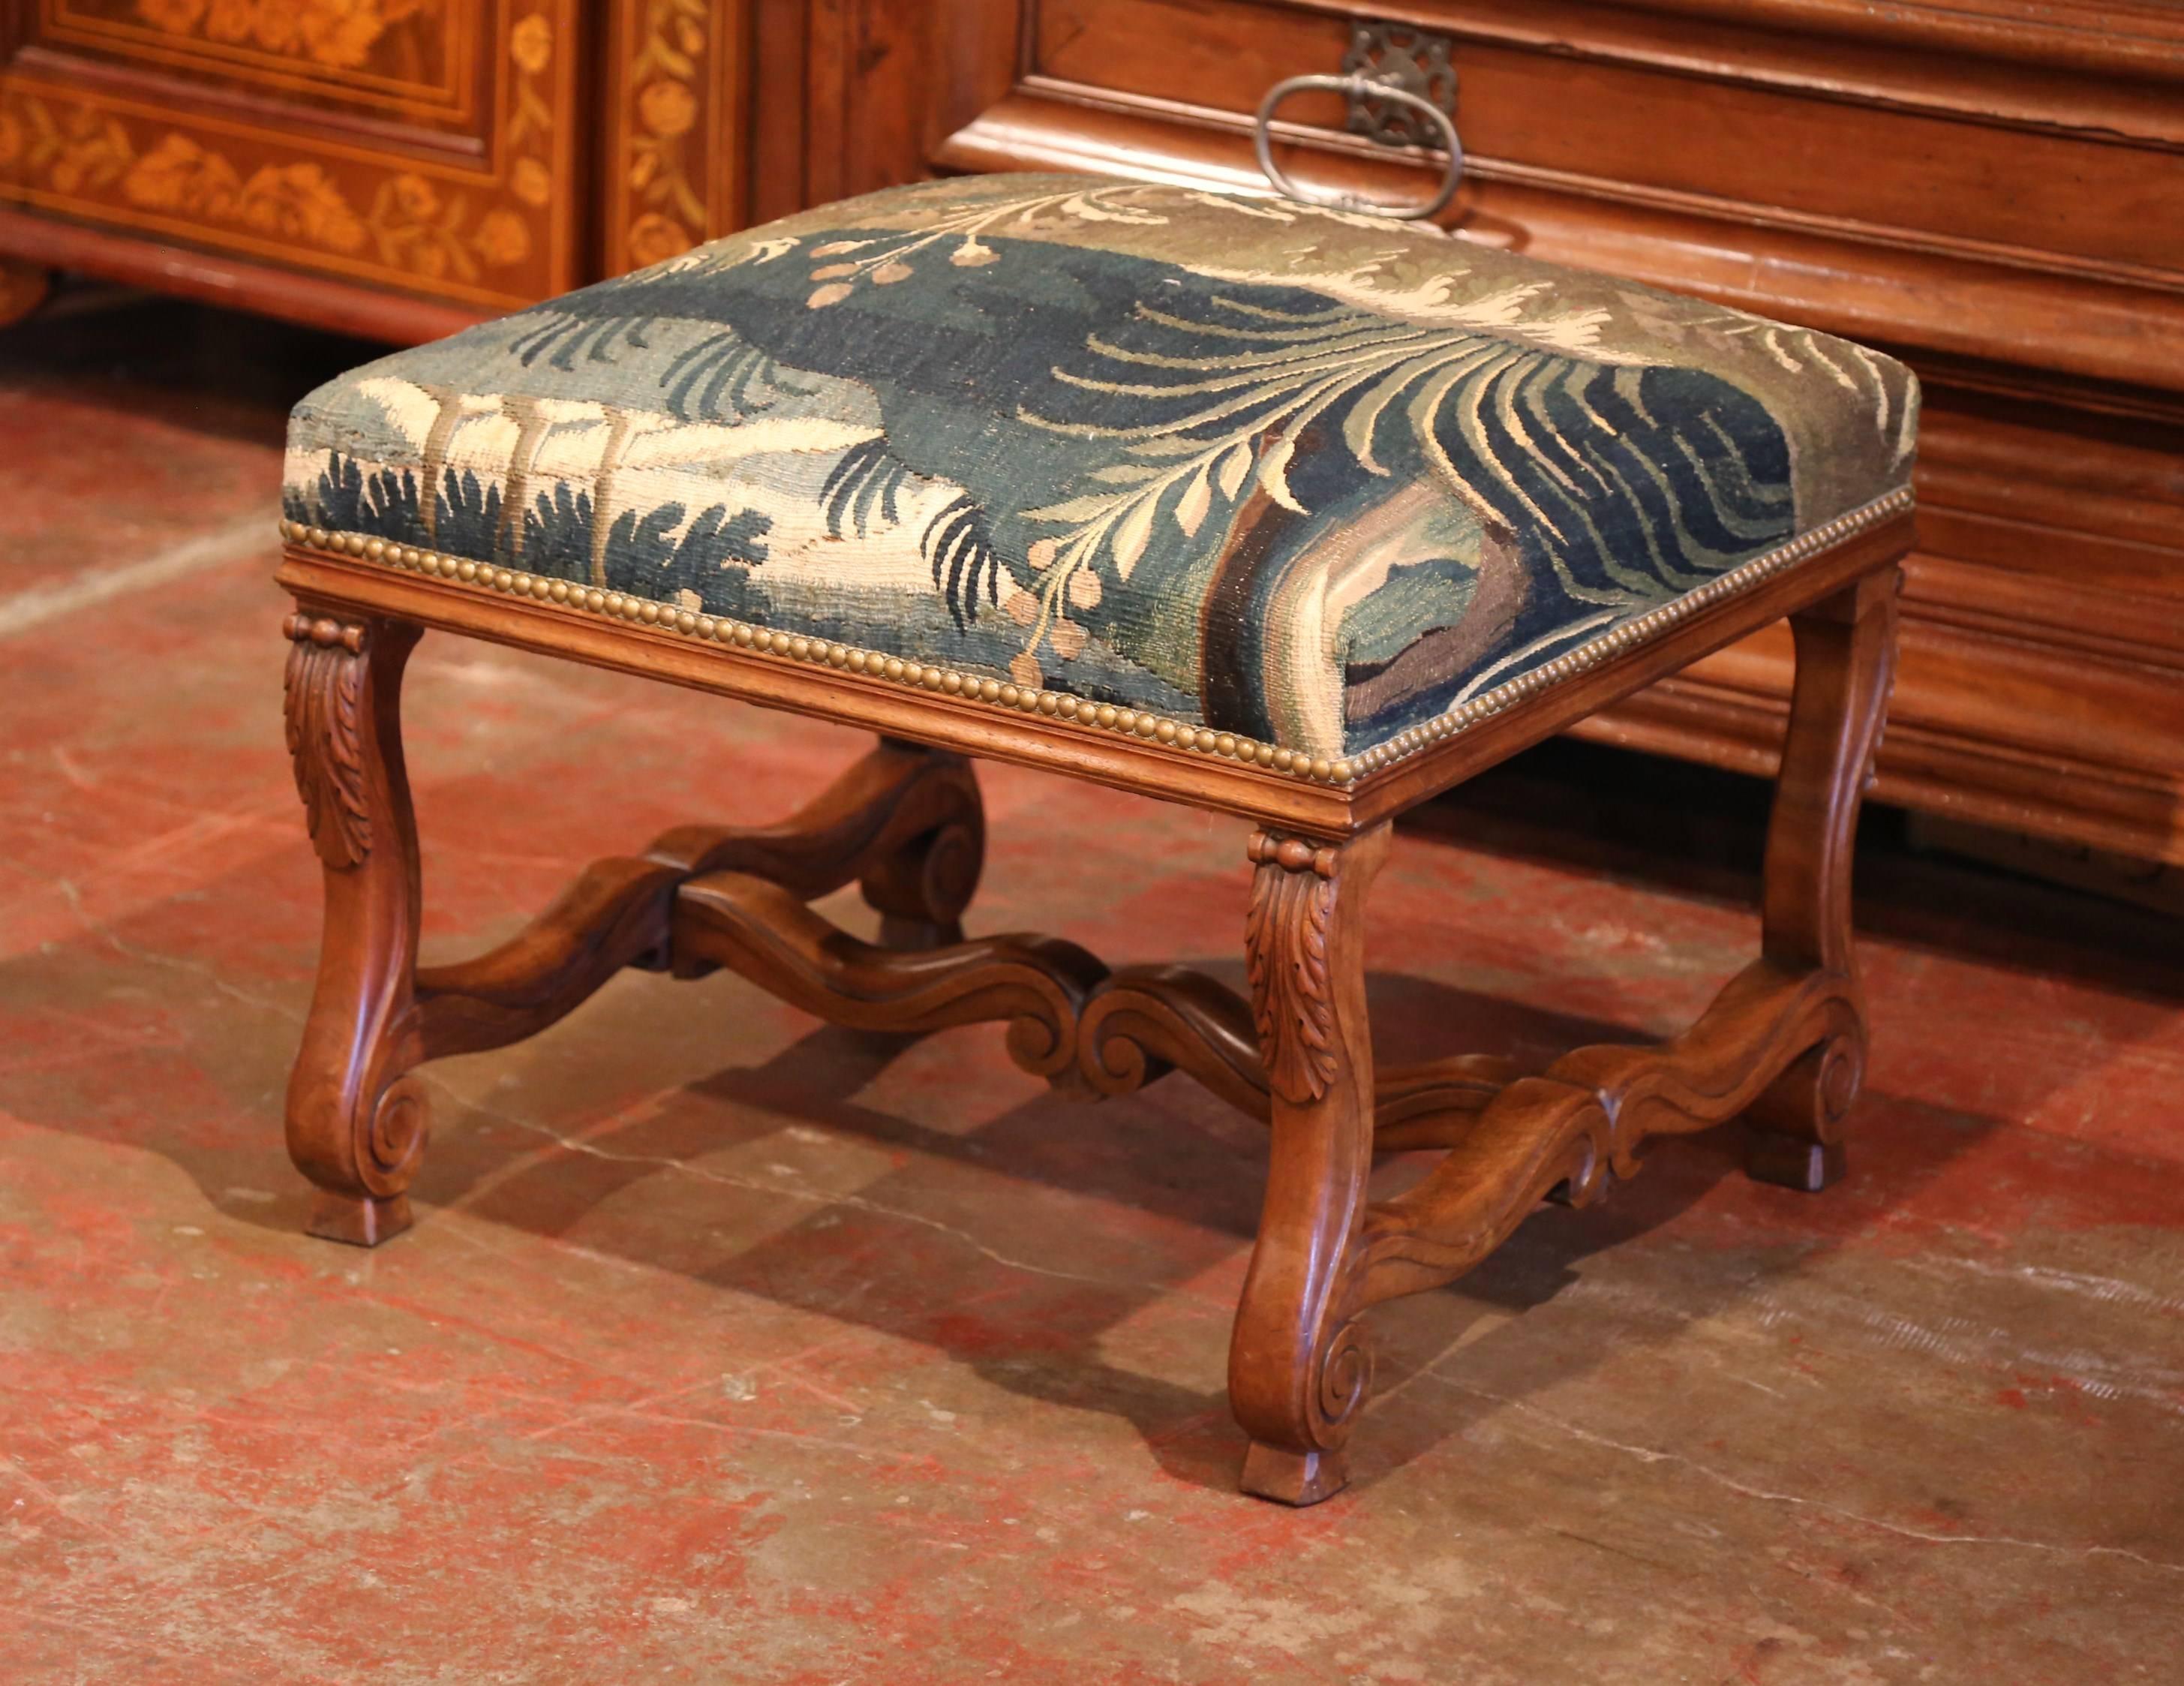 Dieser elegante antike Obstholzhocker wurde um 1880 in Südfrankreich hergestellt. Die quadratische Sitzfläche ist mit vier geschwungenen Beinen mit handgeschnitzten Akanthusblättern und einer kunstvollen Streckbank versehen. Der Sitz wurde mit einem